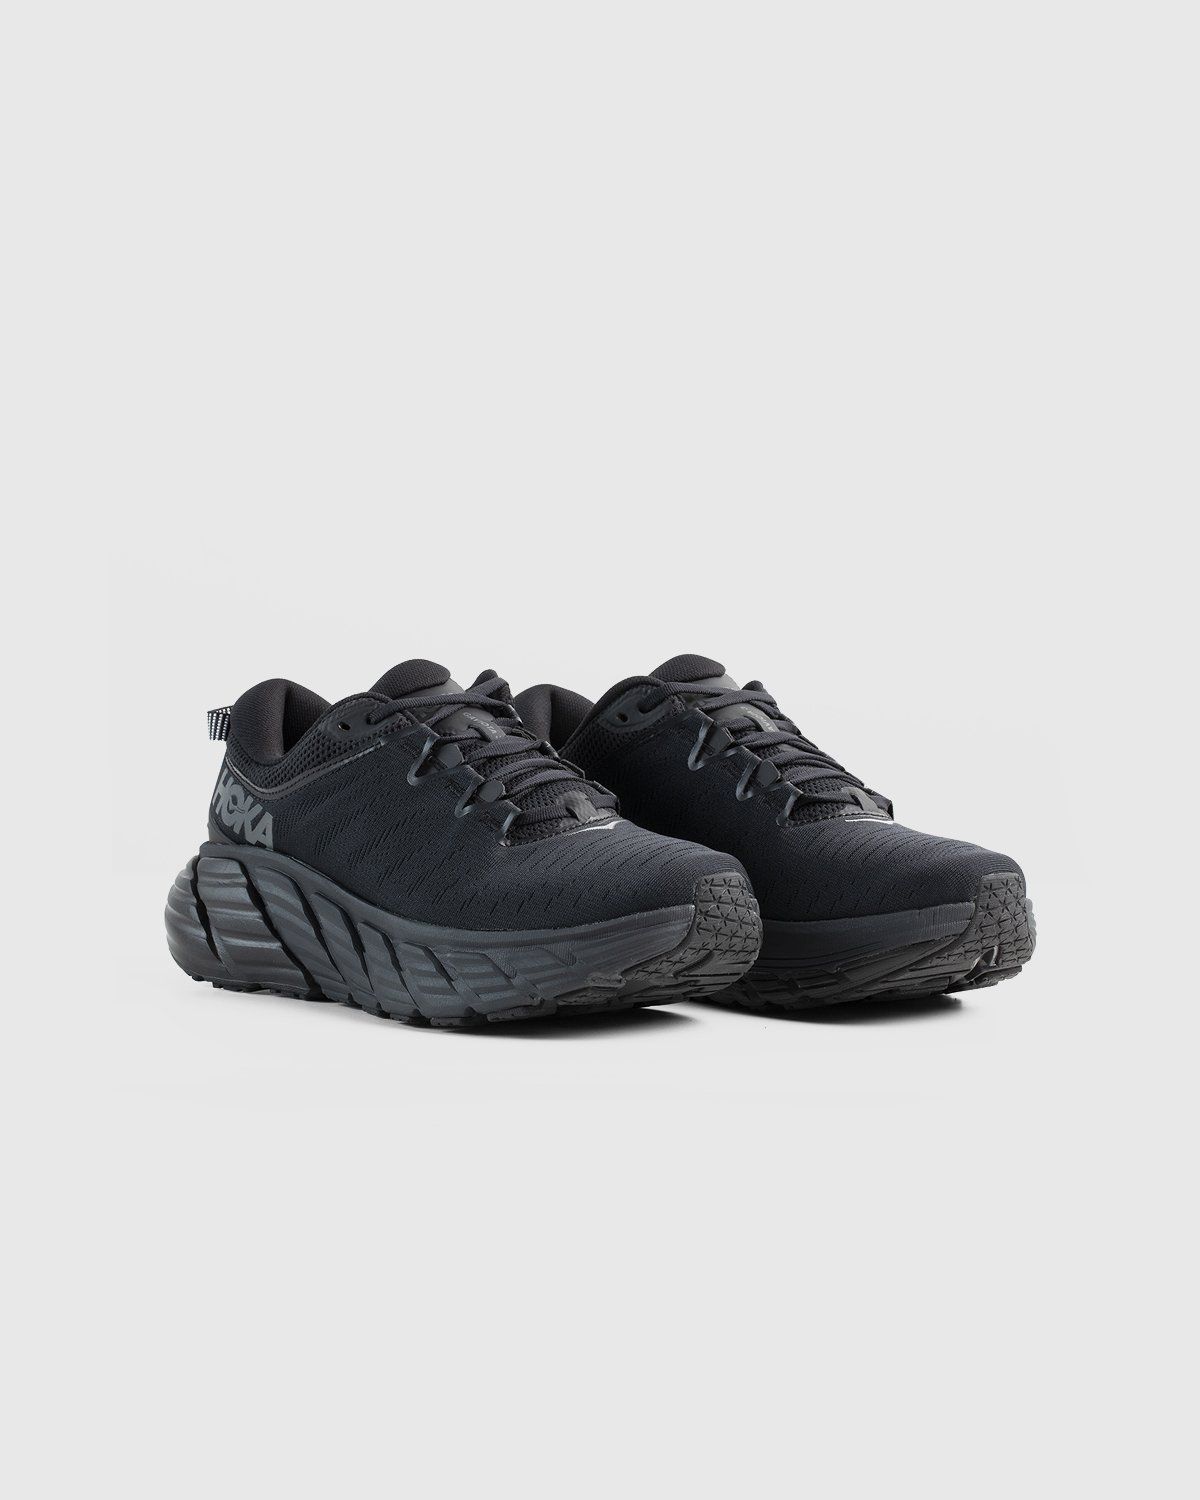 HOKA – M Gaviota 3 Black - Low Top Sneakers - Black - Image 2